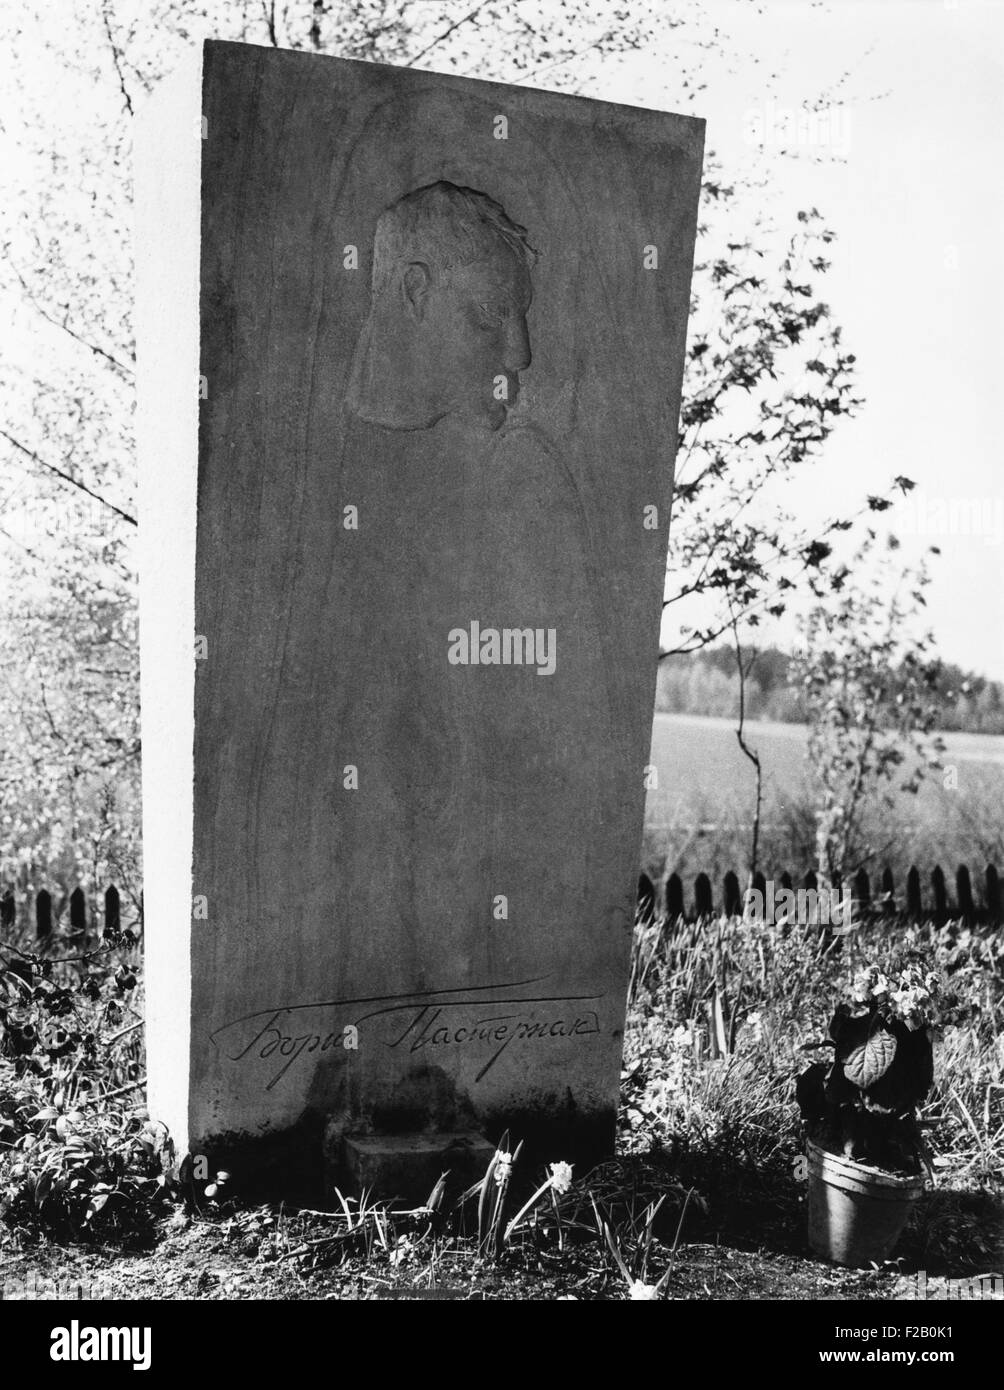 Boris Pasternak la sua tomba in una chiesa russo-ortodossa nel cimitero Peredelkino, nei pressi di Mosca. Maggio 1966. Al momento della sua morte, Pasternak era fuori di favore con l'era sovietica di governo. (CSU 2015 9 1062) Foto Stock